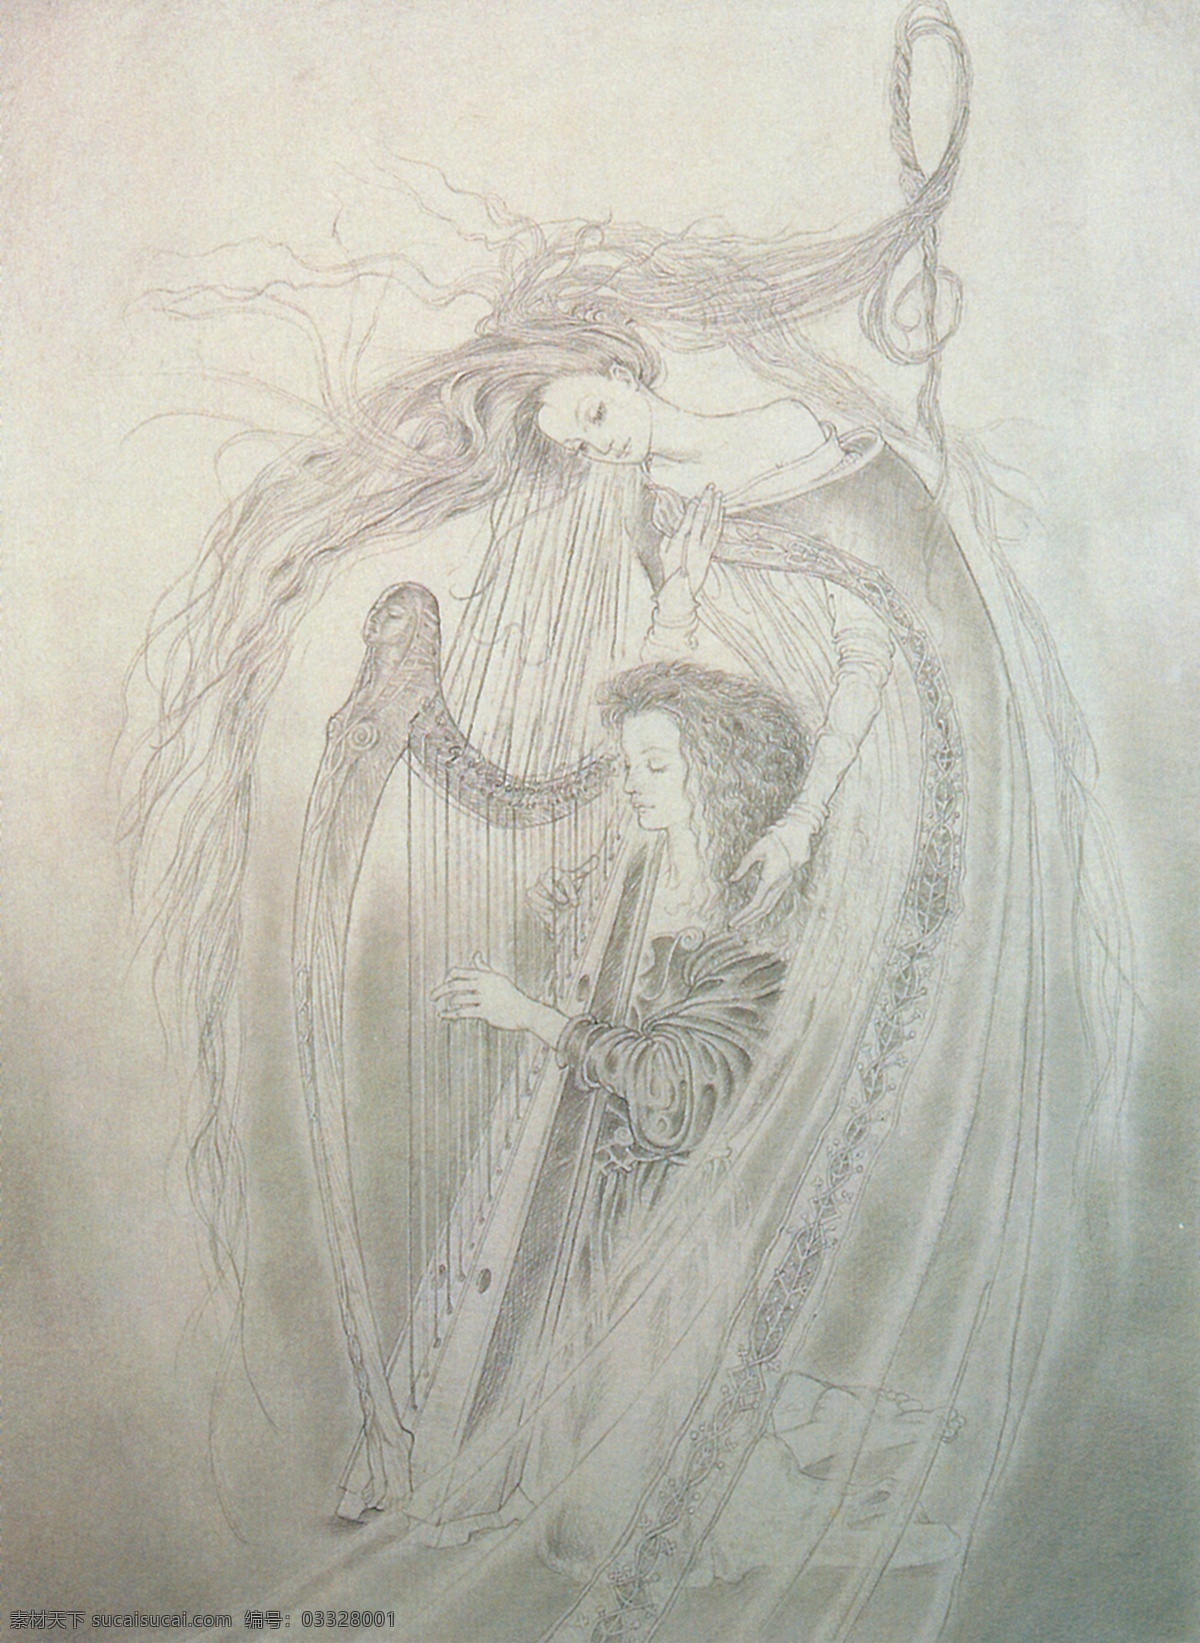 插画 插图 动漫 绘画书法 精灵 美女 欧洲 弹竖琴的仙女 天使 仙女 竖琴 线条 神话 童话 文化艺术 插画集